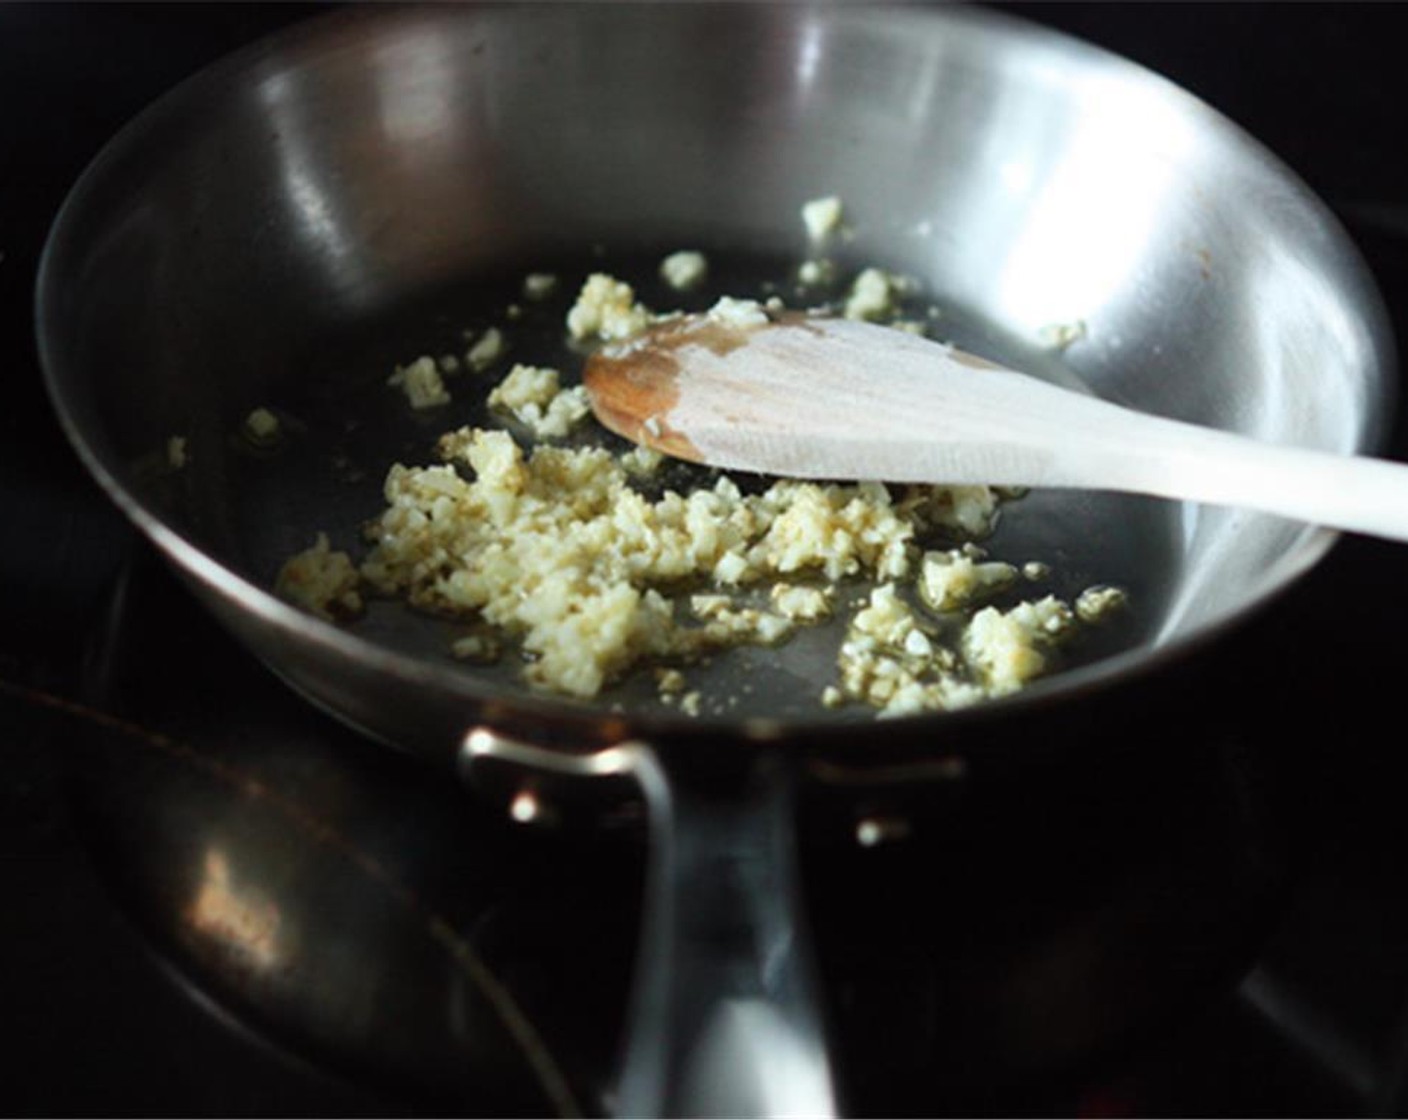 Schritt 2 Olivenöl (1 EL) in einer kleinen Bratpfanne bei mittlerer Hitze erhitzen. Wenn es heiss ist, den gehackten Knoblauch hinzufügen und unter häufigem Rühren 3 bis 4 Minuten sautieren, bis der Knoblauch eine goldene Farbe annimmt.